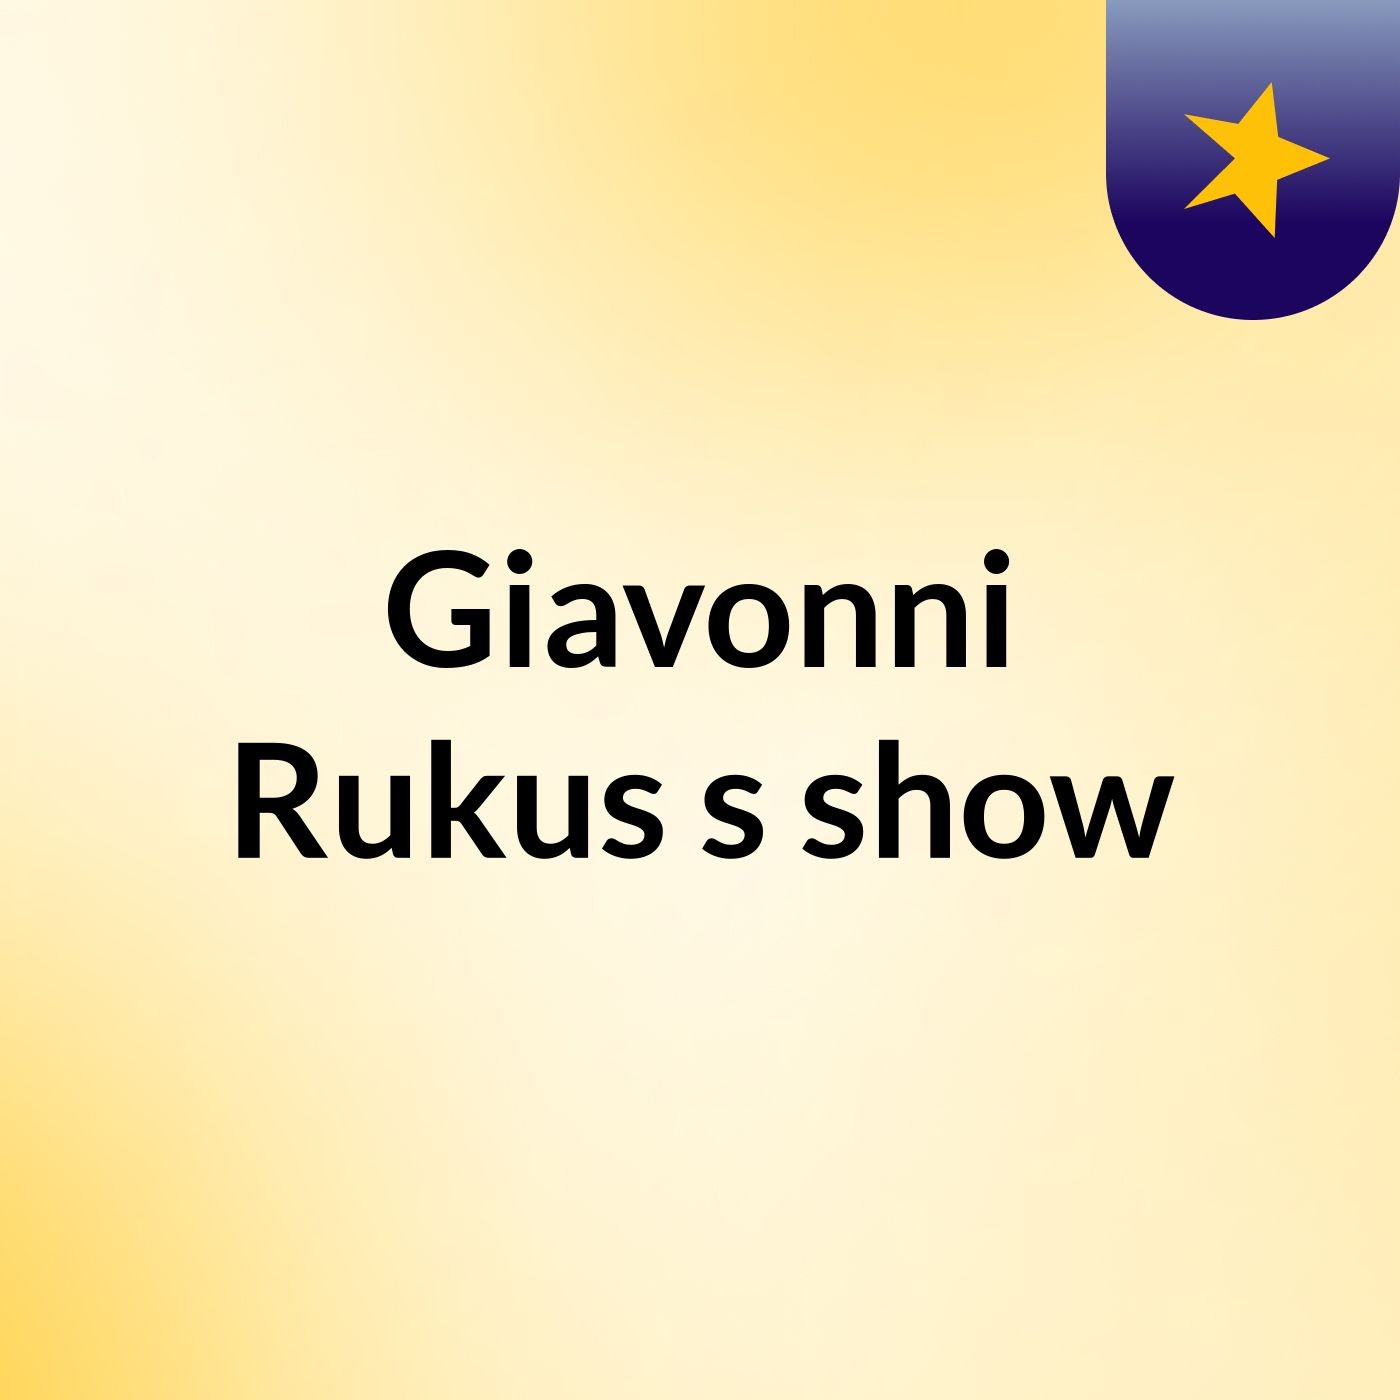 Giavonni Rukus's show